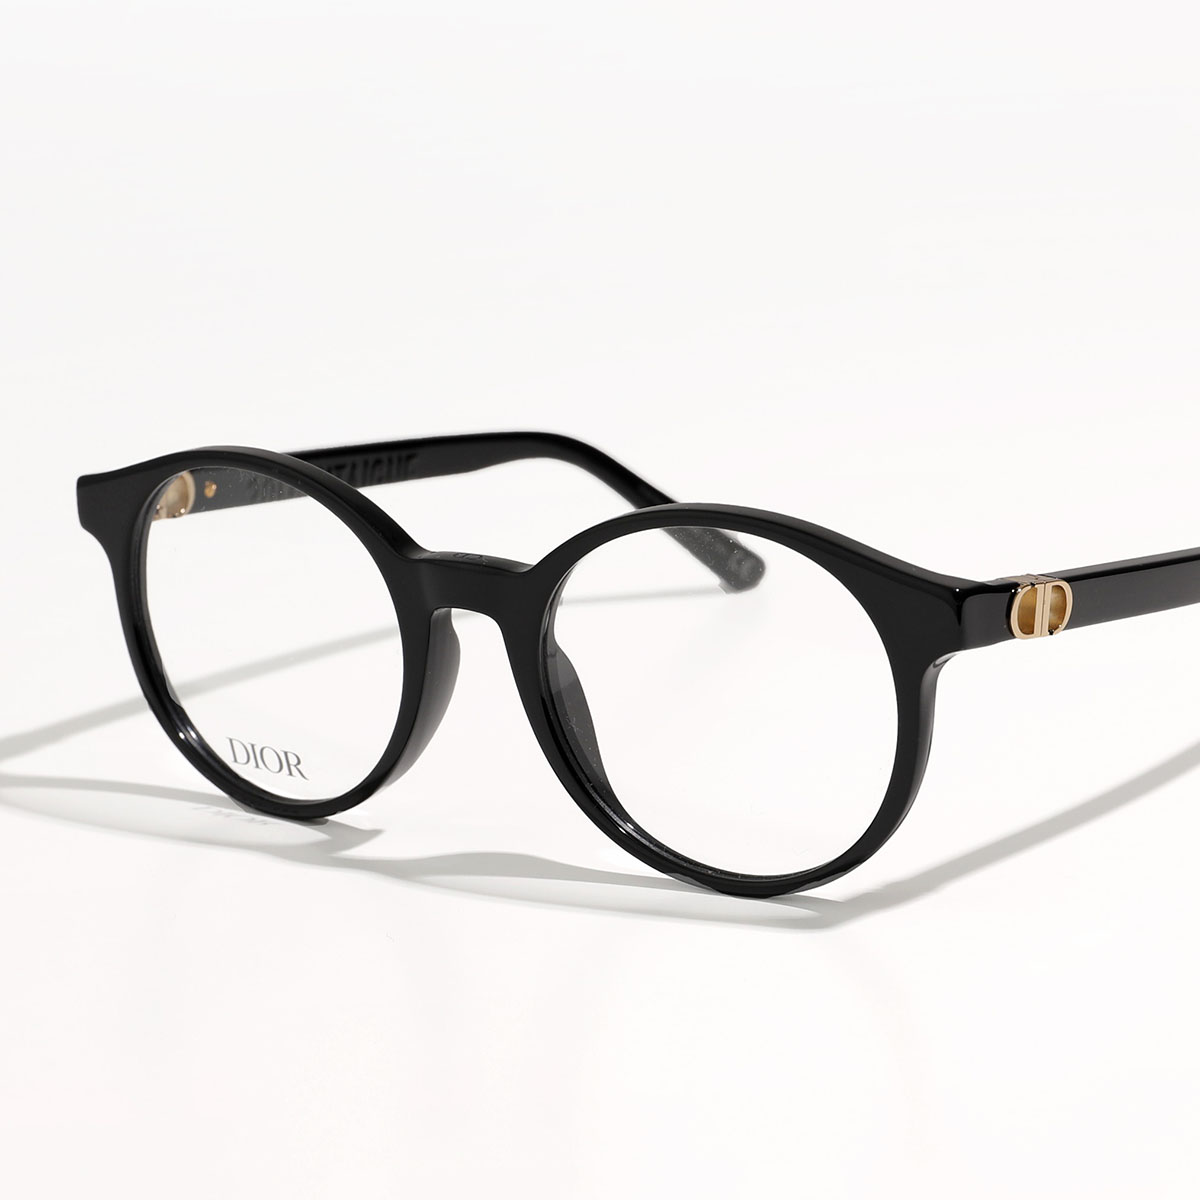 Dior ディオール メガネ 30MONTAIGNE MINIO モンテーニュ ミニ CD50026I レディース ボストン型 めがね 伊達メガネ  ダテ 眼鏡 アイウェア カラー2色